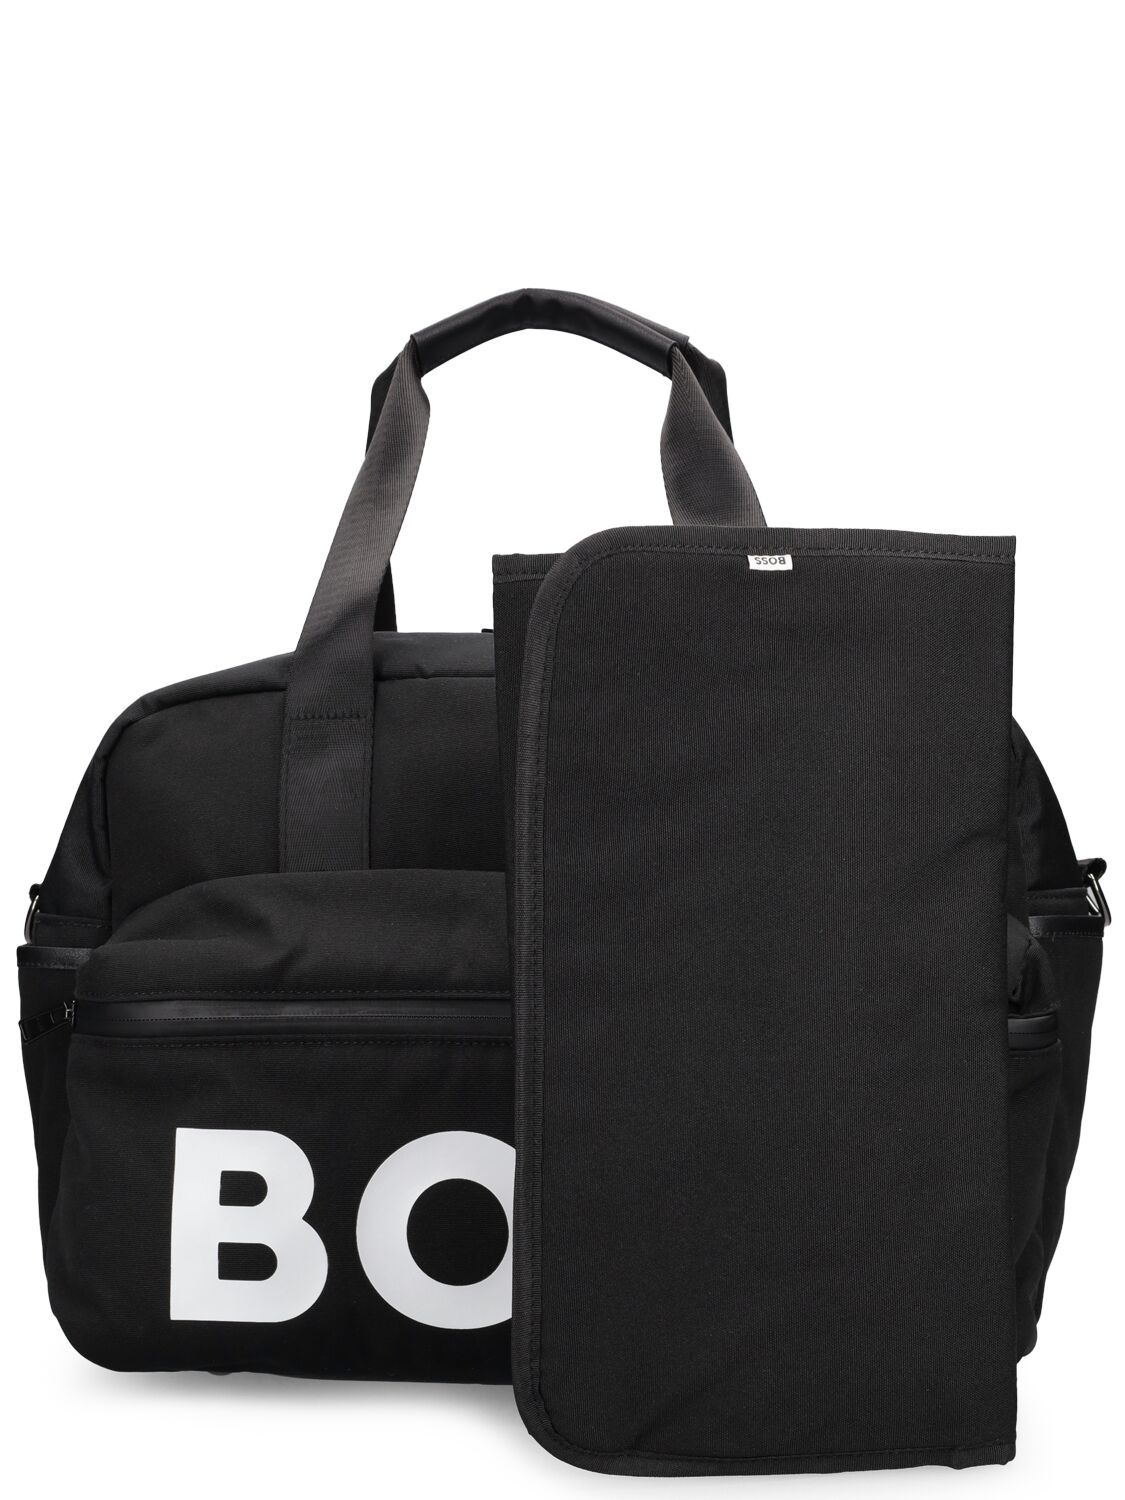 Hugo Boss Kids' Nylon Changing Bag In Black